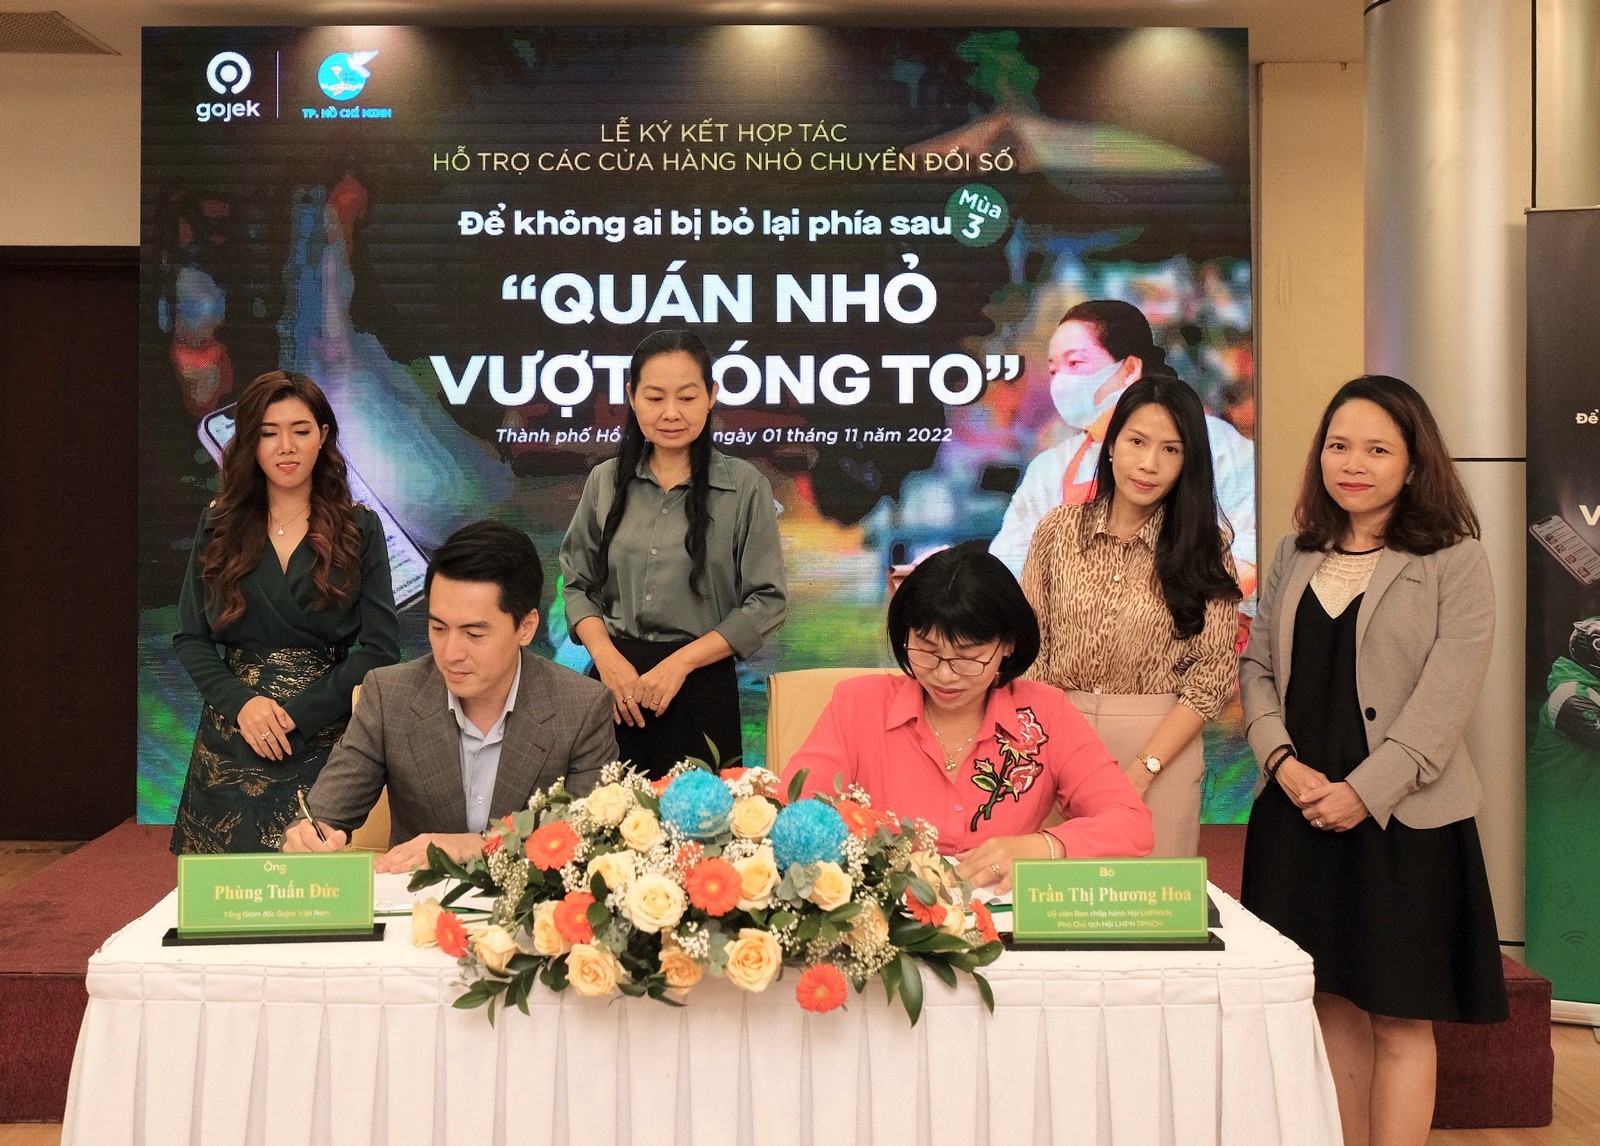 Gojek đã khởi động dự án “Quán nhỏ vượt sóng to” tại Việt Nam